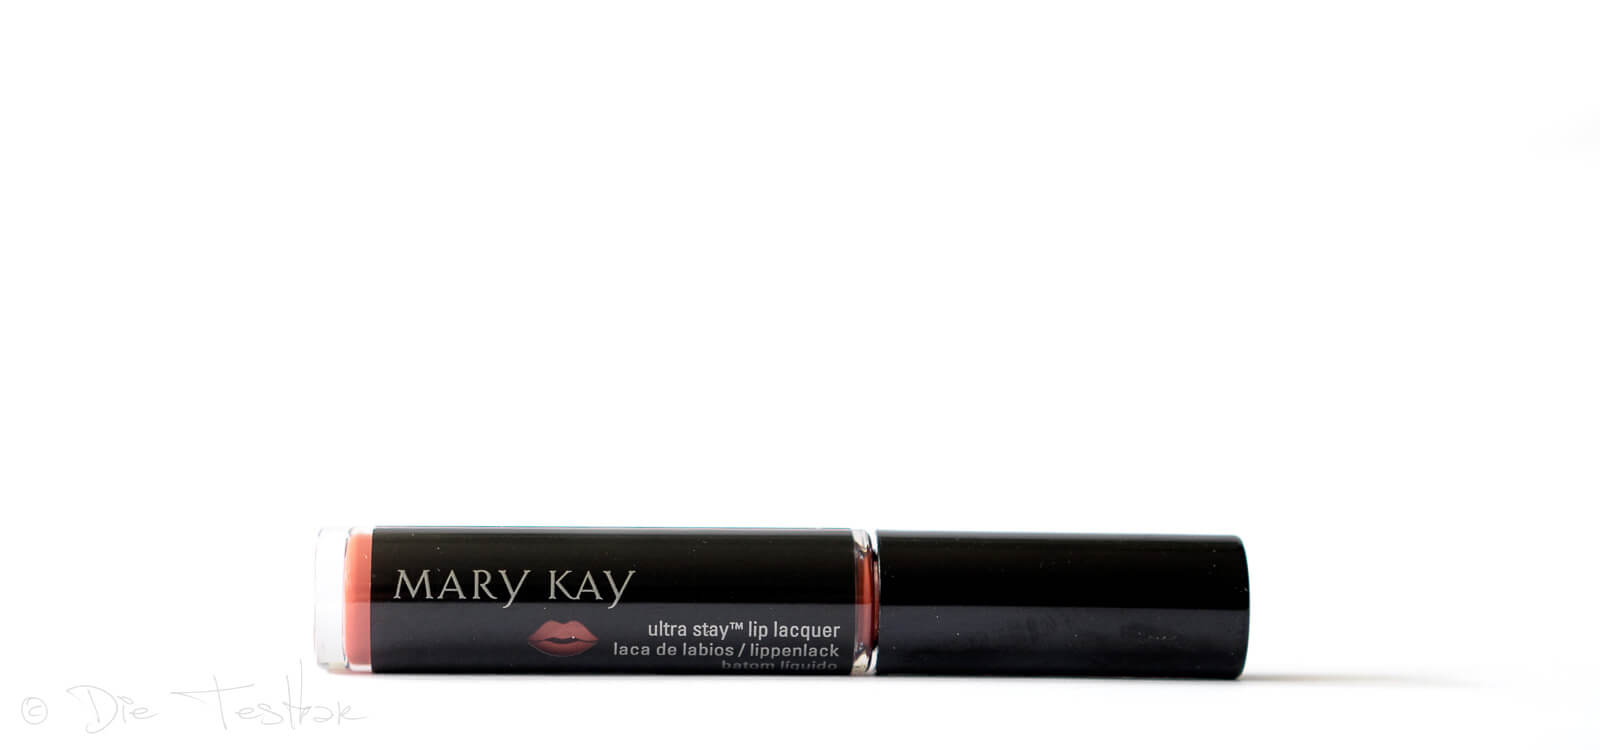 NEU und nur Limitiert erhältlich - Ultra Stay Lip Lacquer Kit von Mary Kay